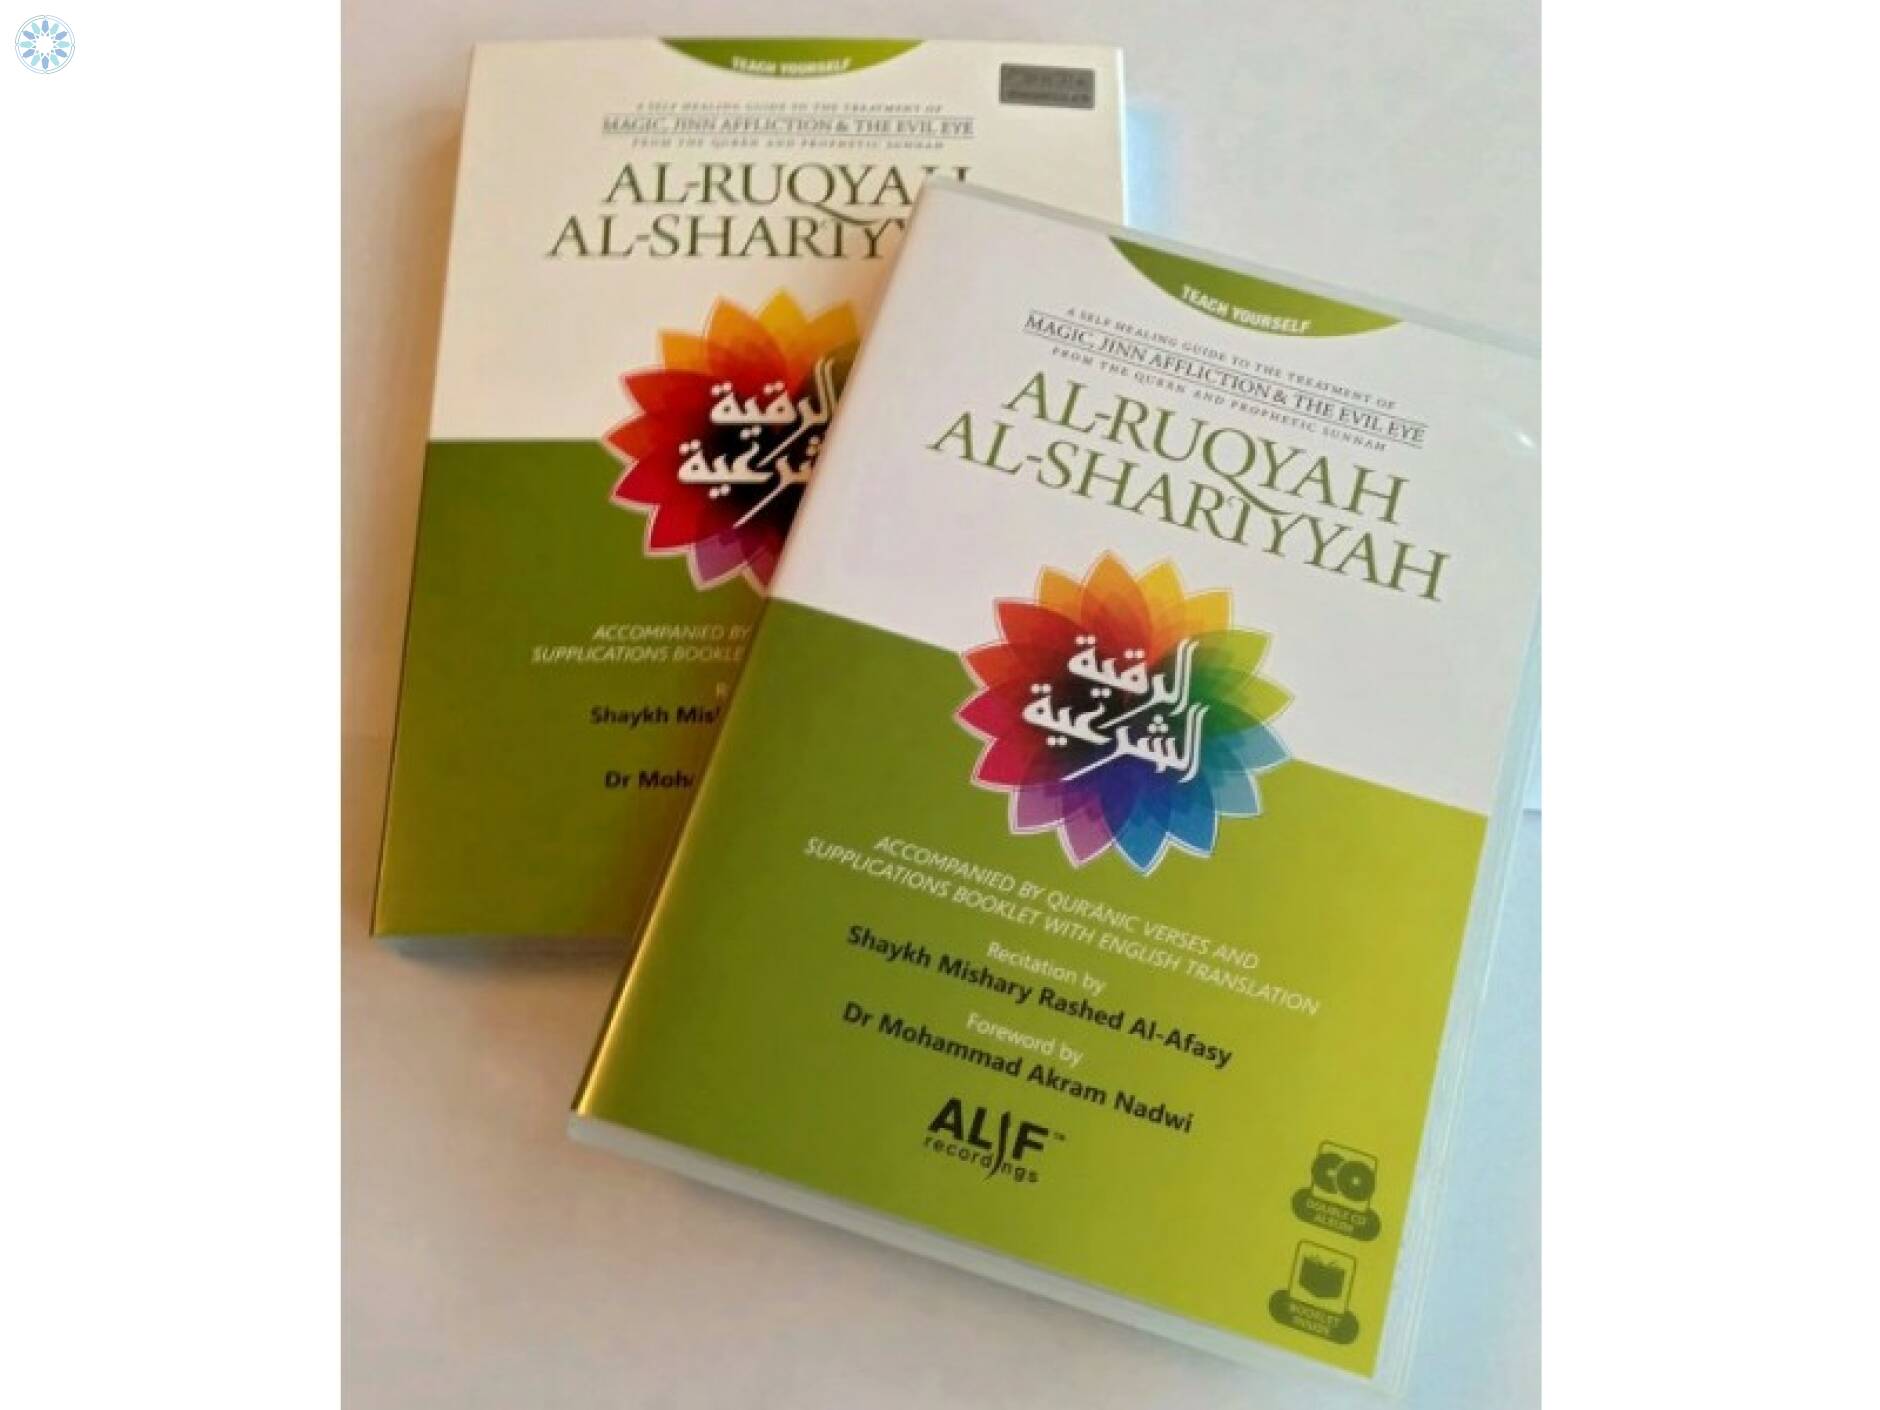 Essentials › Digital Media › Al-Ruqyah Al-Shariyyah (2CDs + 64 page